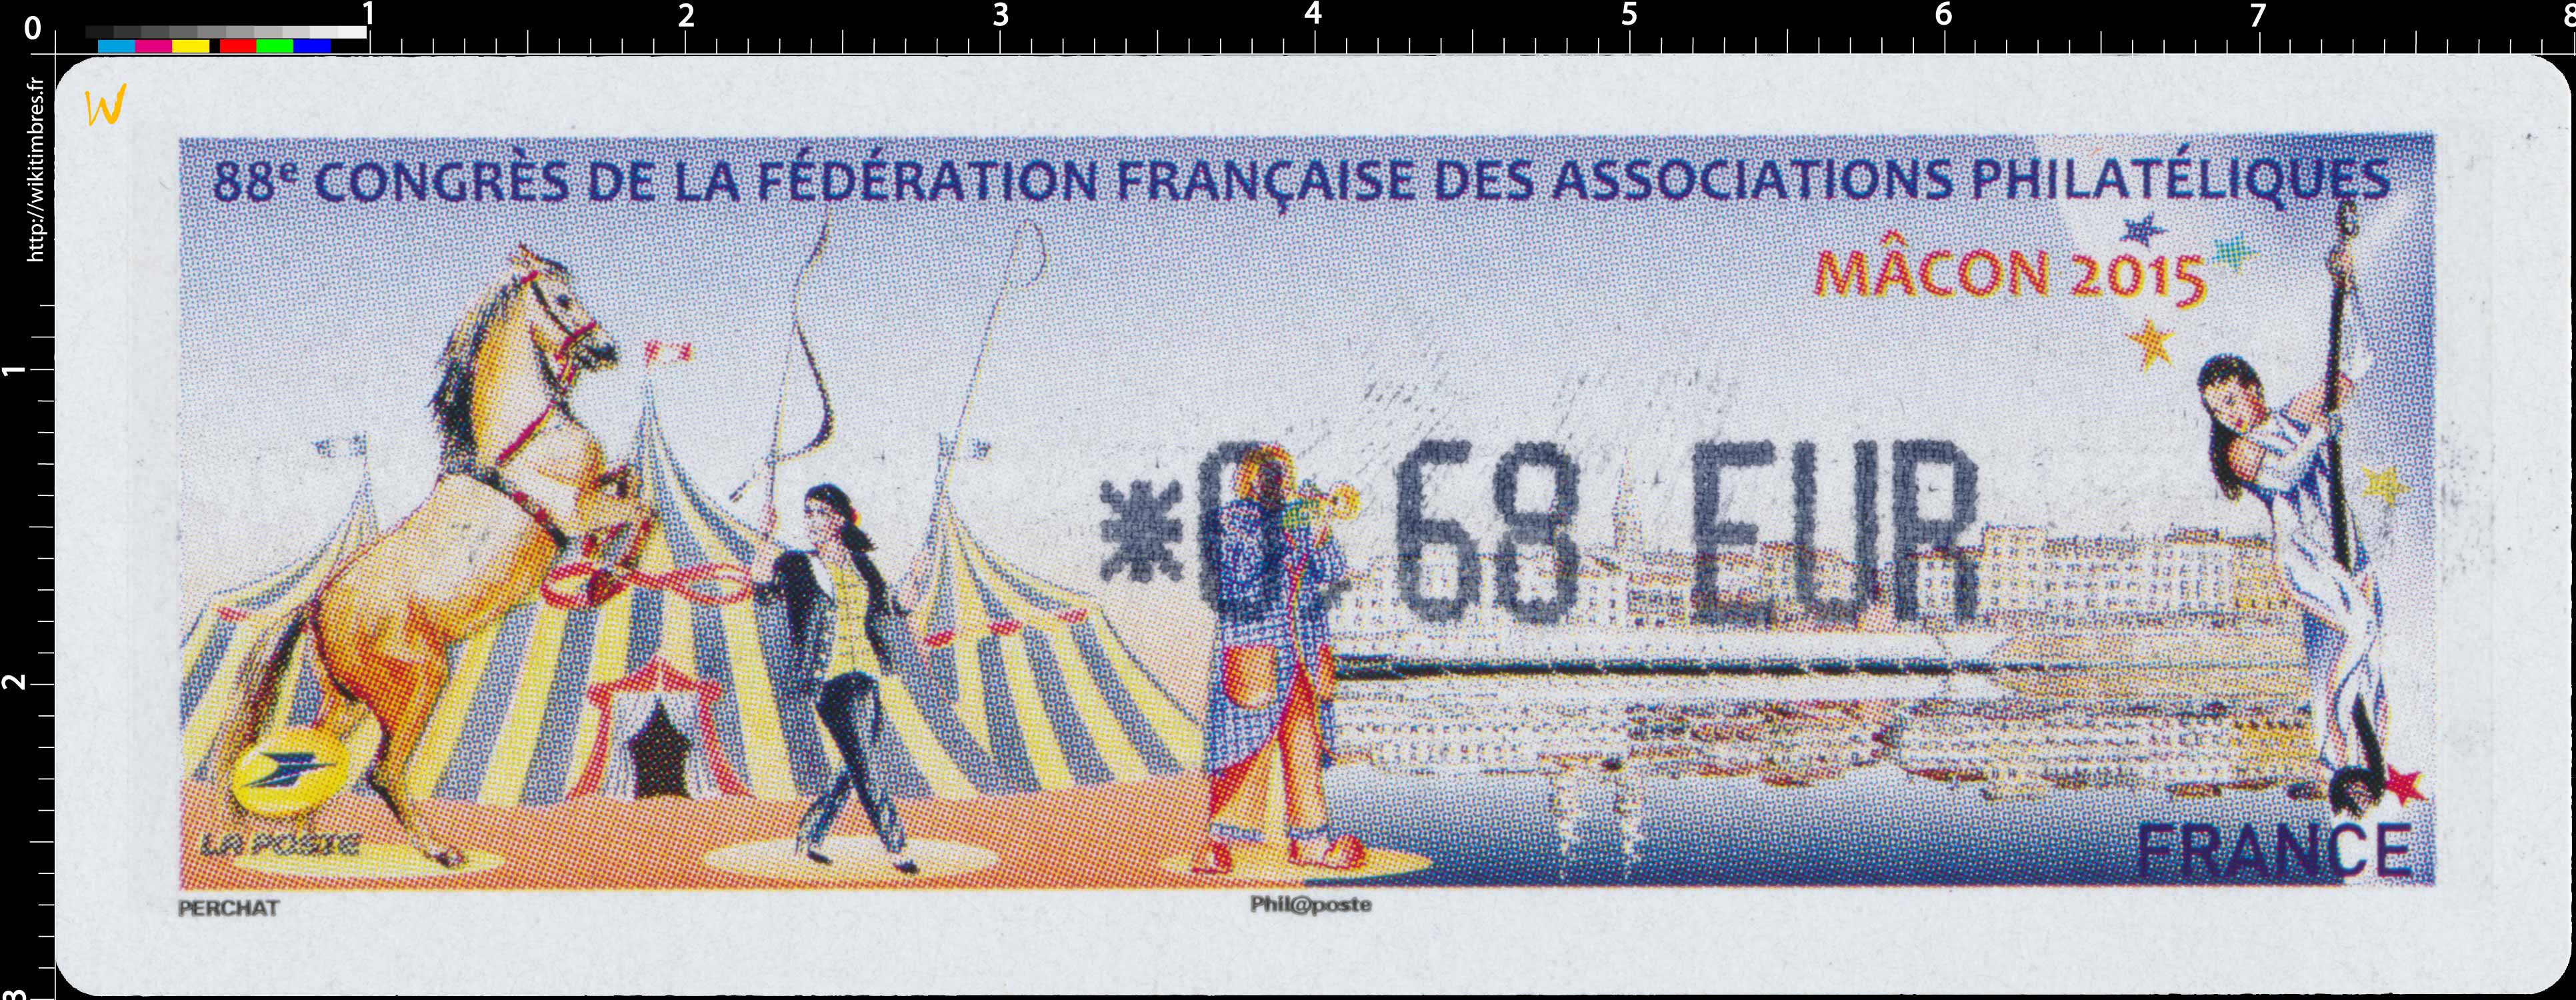 88e Congrès de la Fédération française des associations philatéliques Mâcon 2015